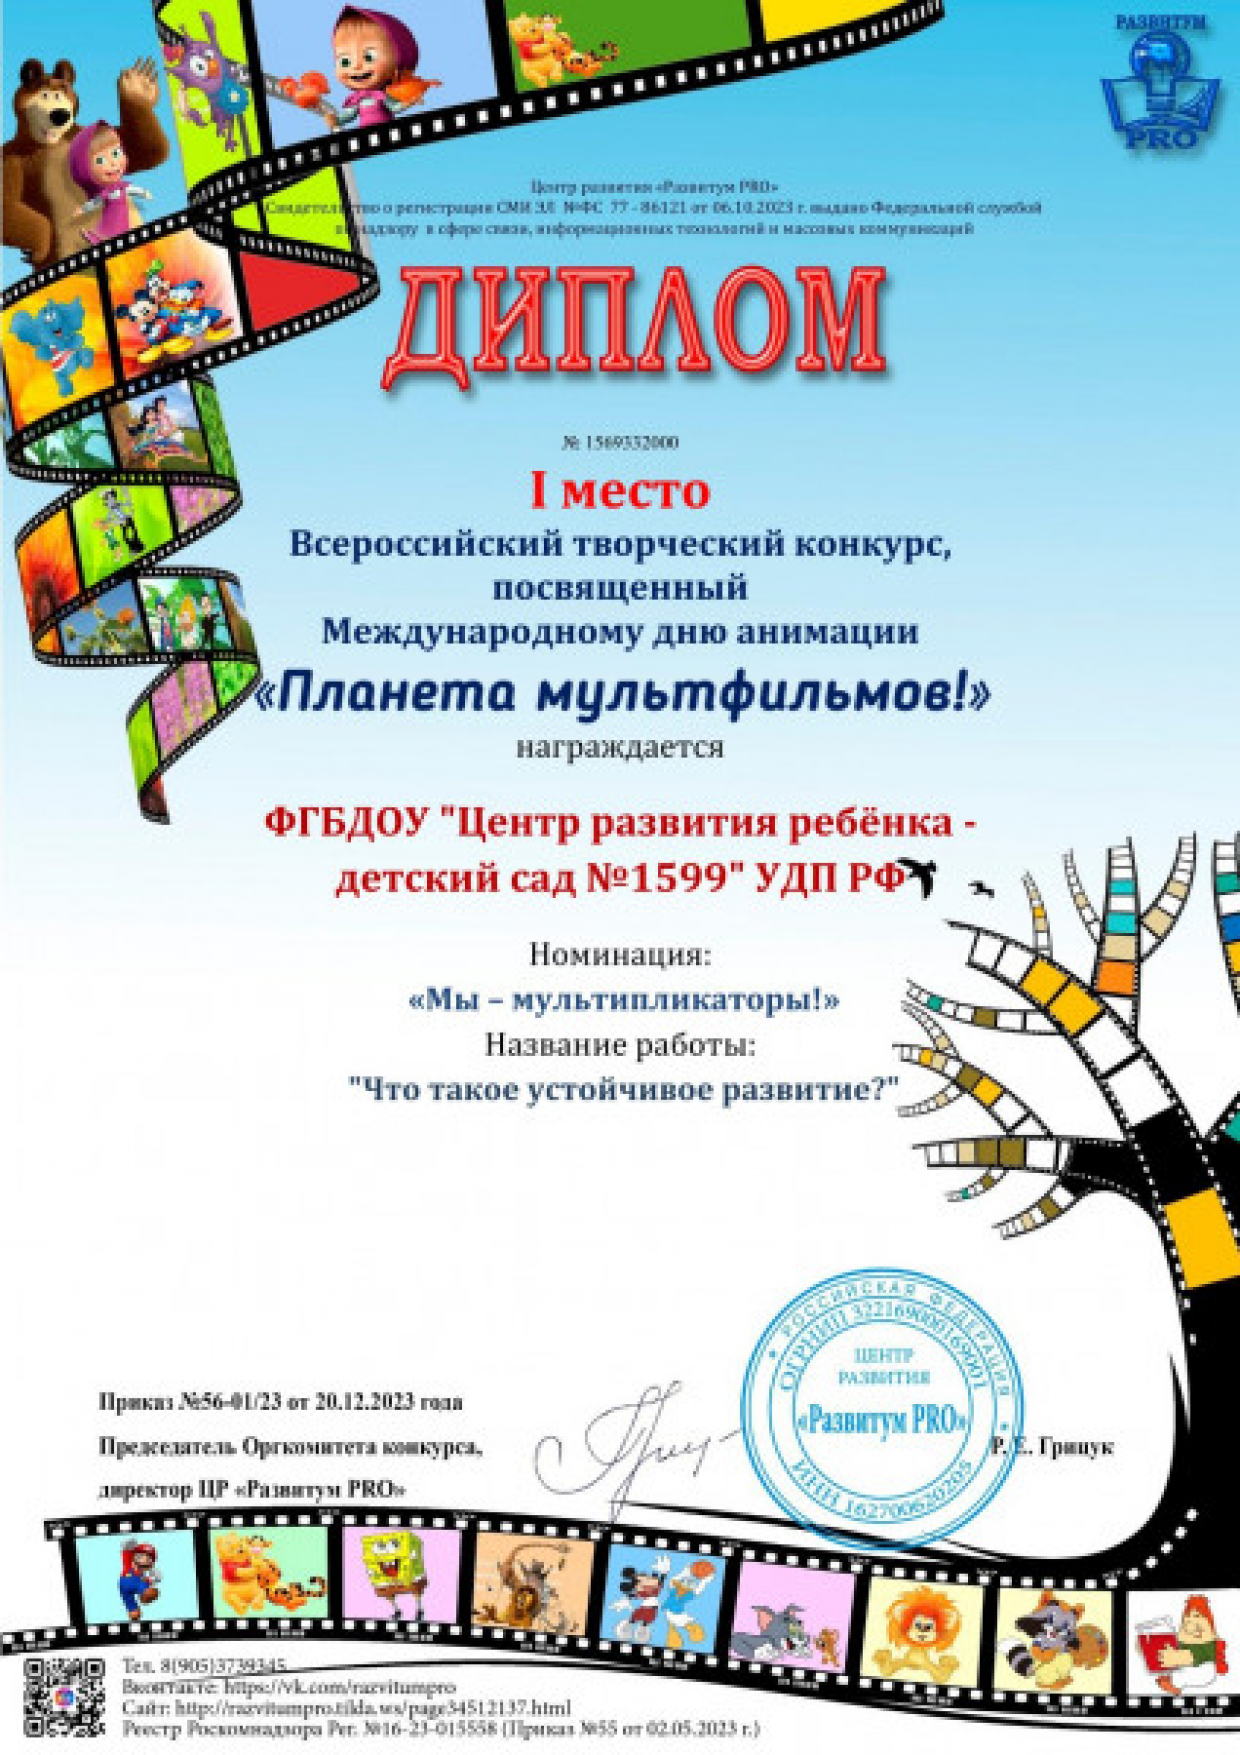 Диплом 1 место, номинация "Мы - мультипликаторы", конкурс "Планета мультфильмов!"